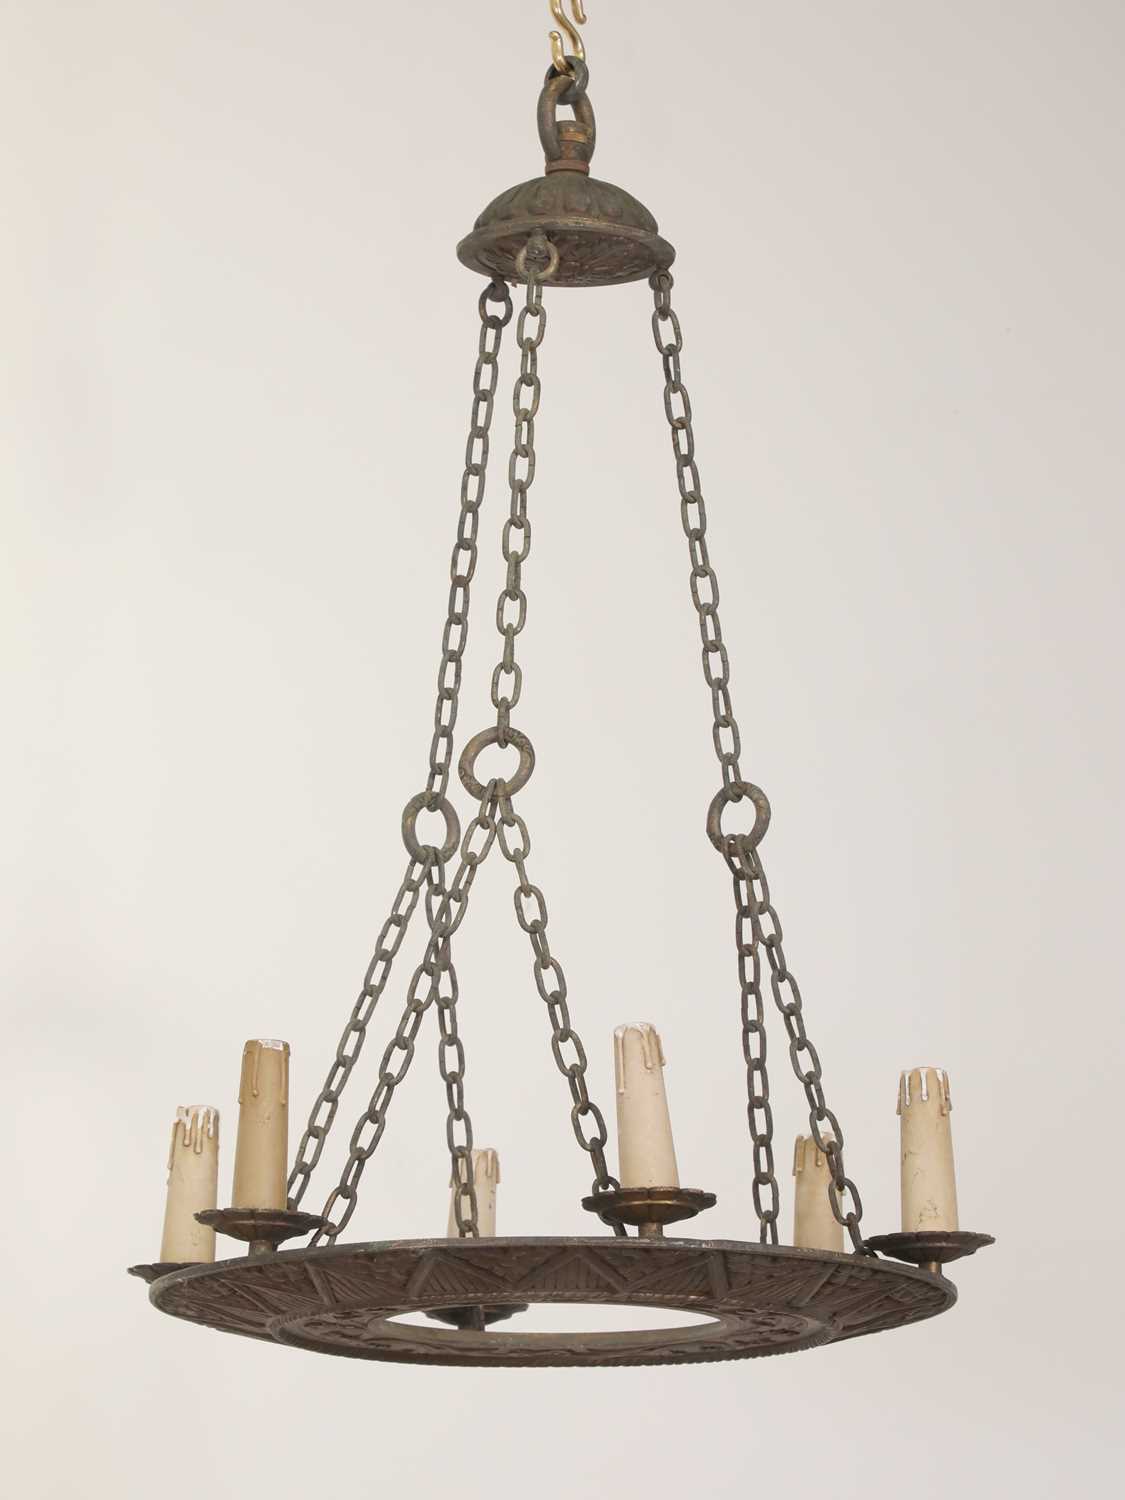 An Edwardian six-light bronze electrolier,